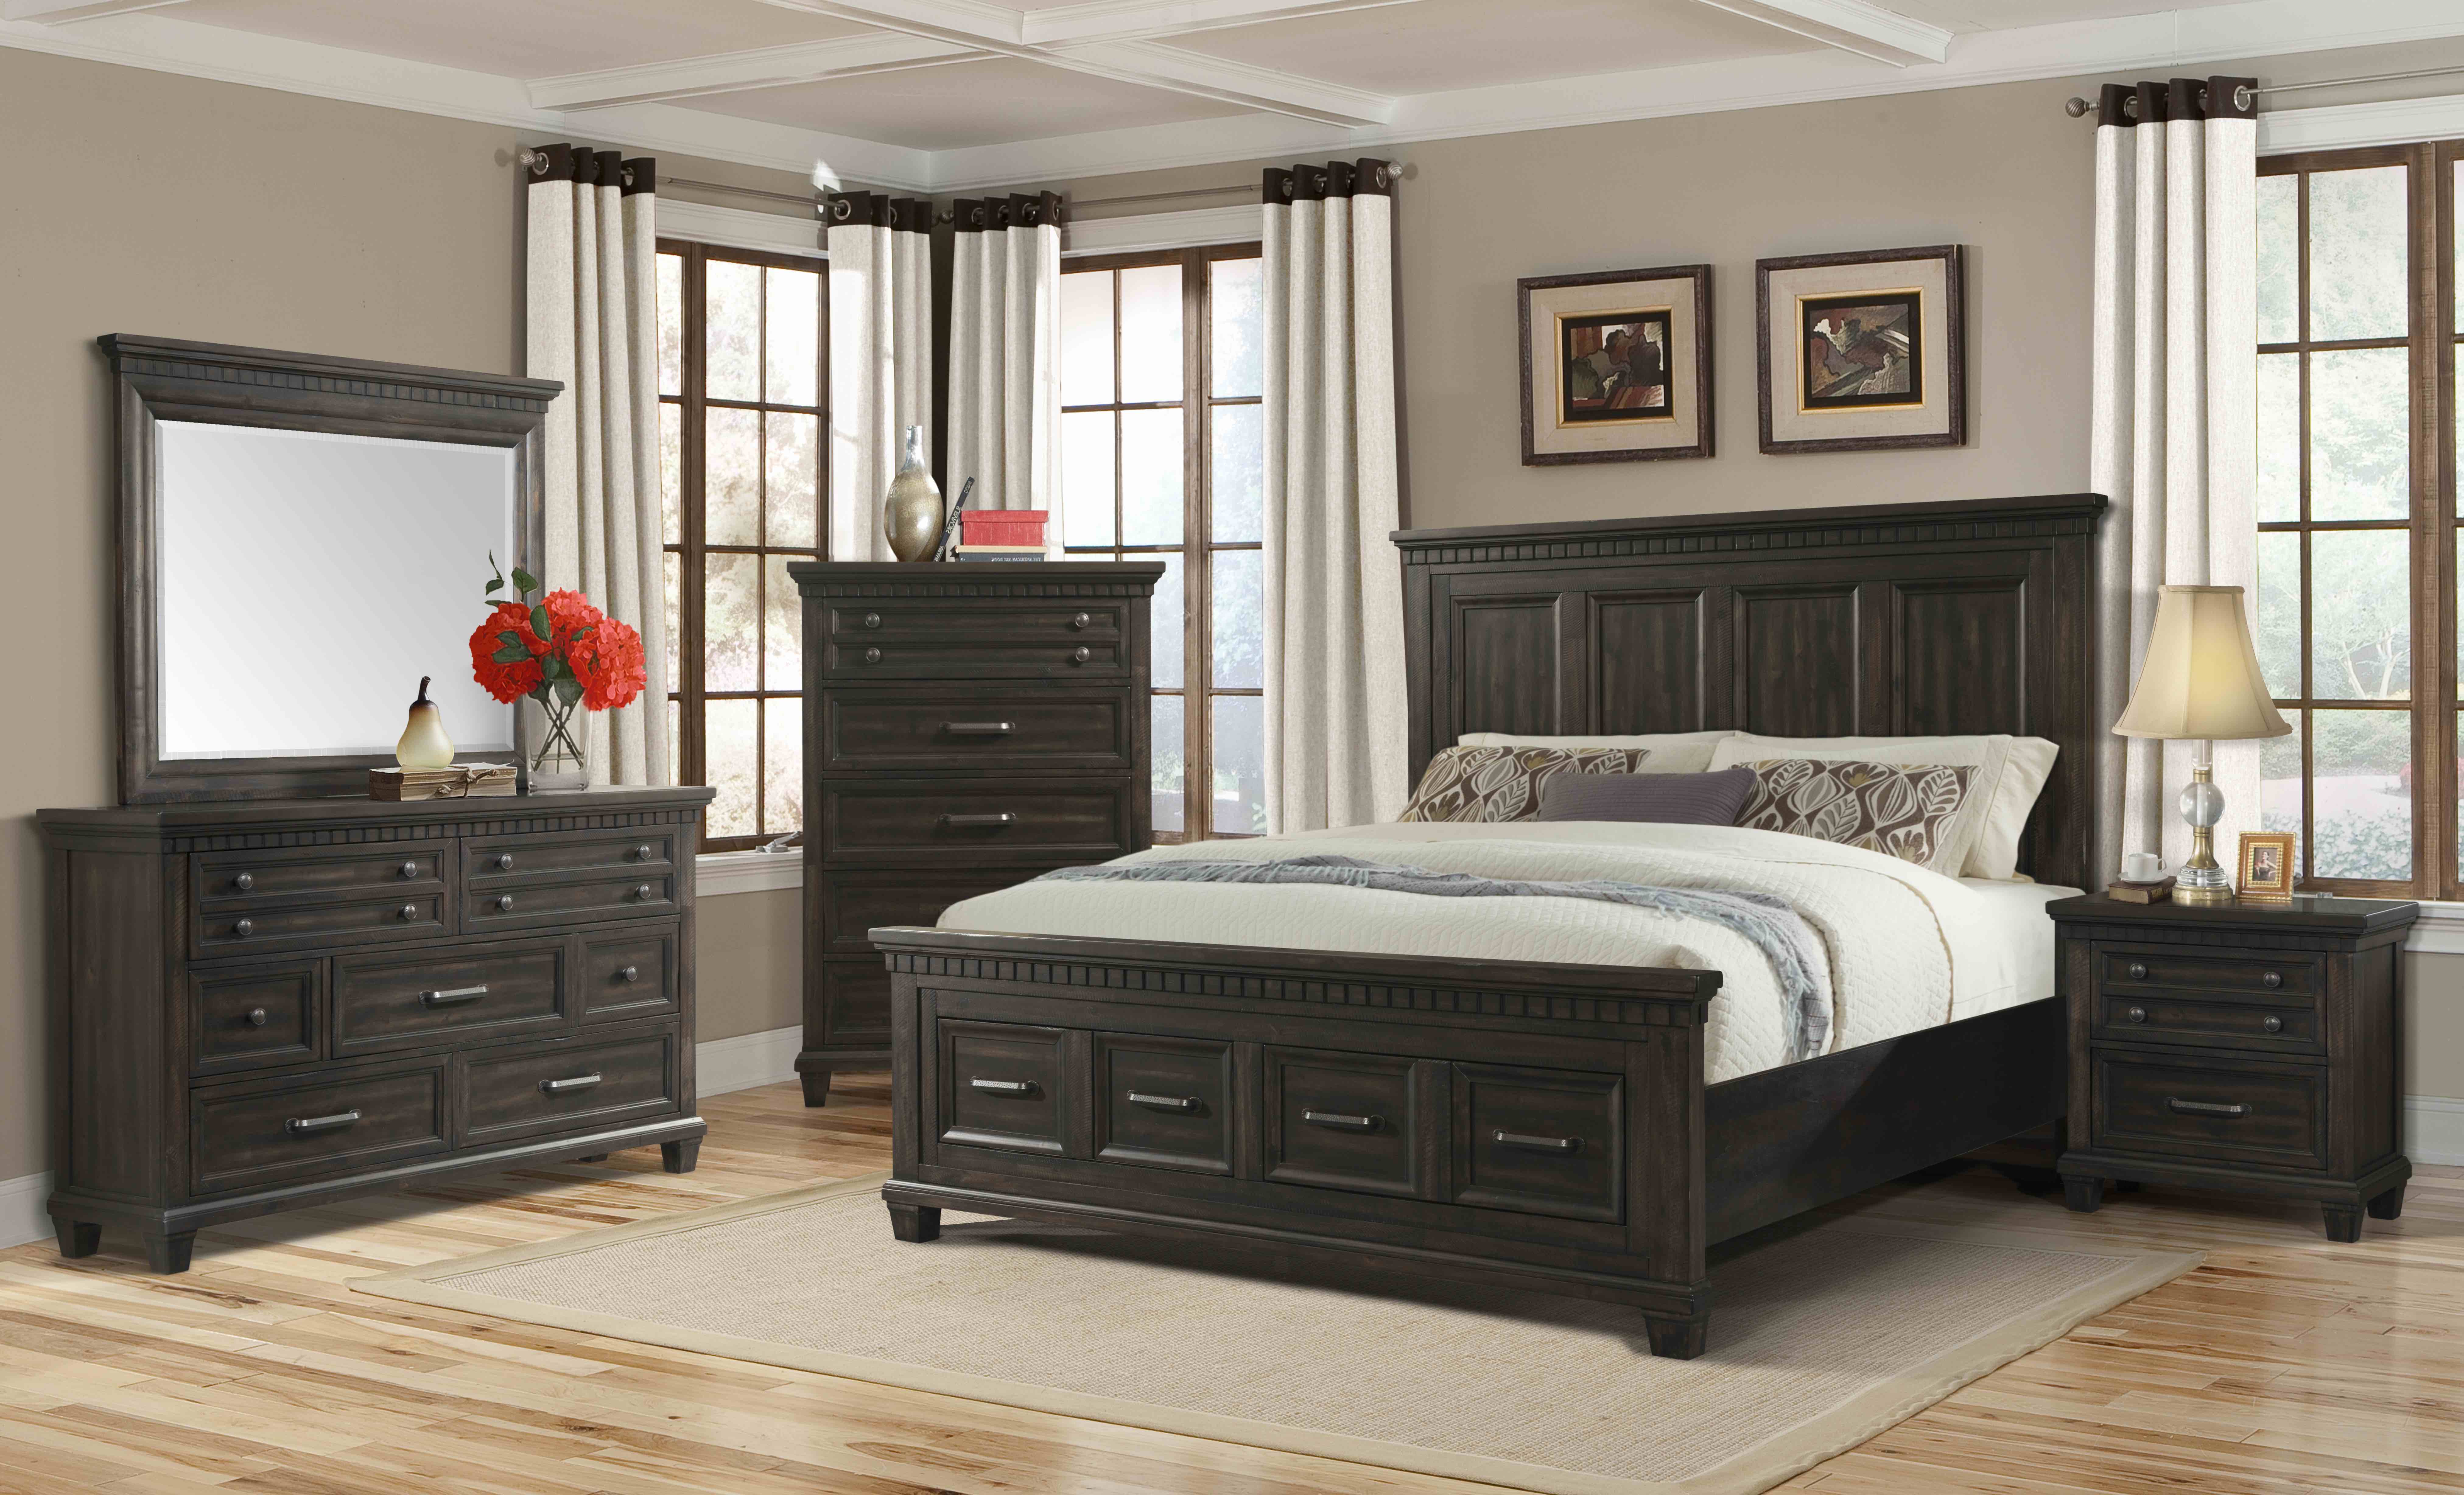 used queen bedroom furniture set